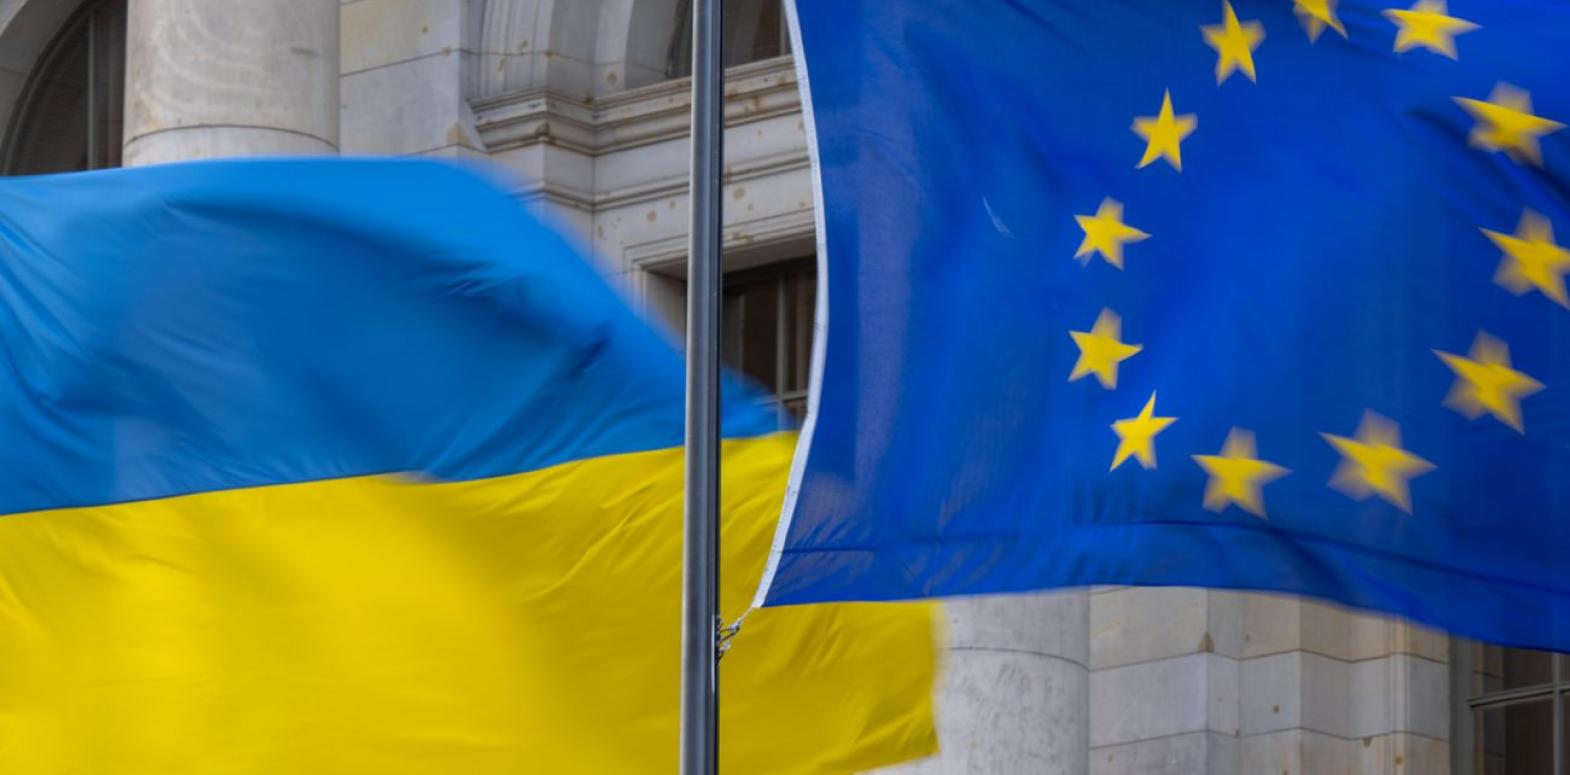 Меньше, чем у других стран: посол ЕС о том, сколько времени займет путь Украины в ЕС